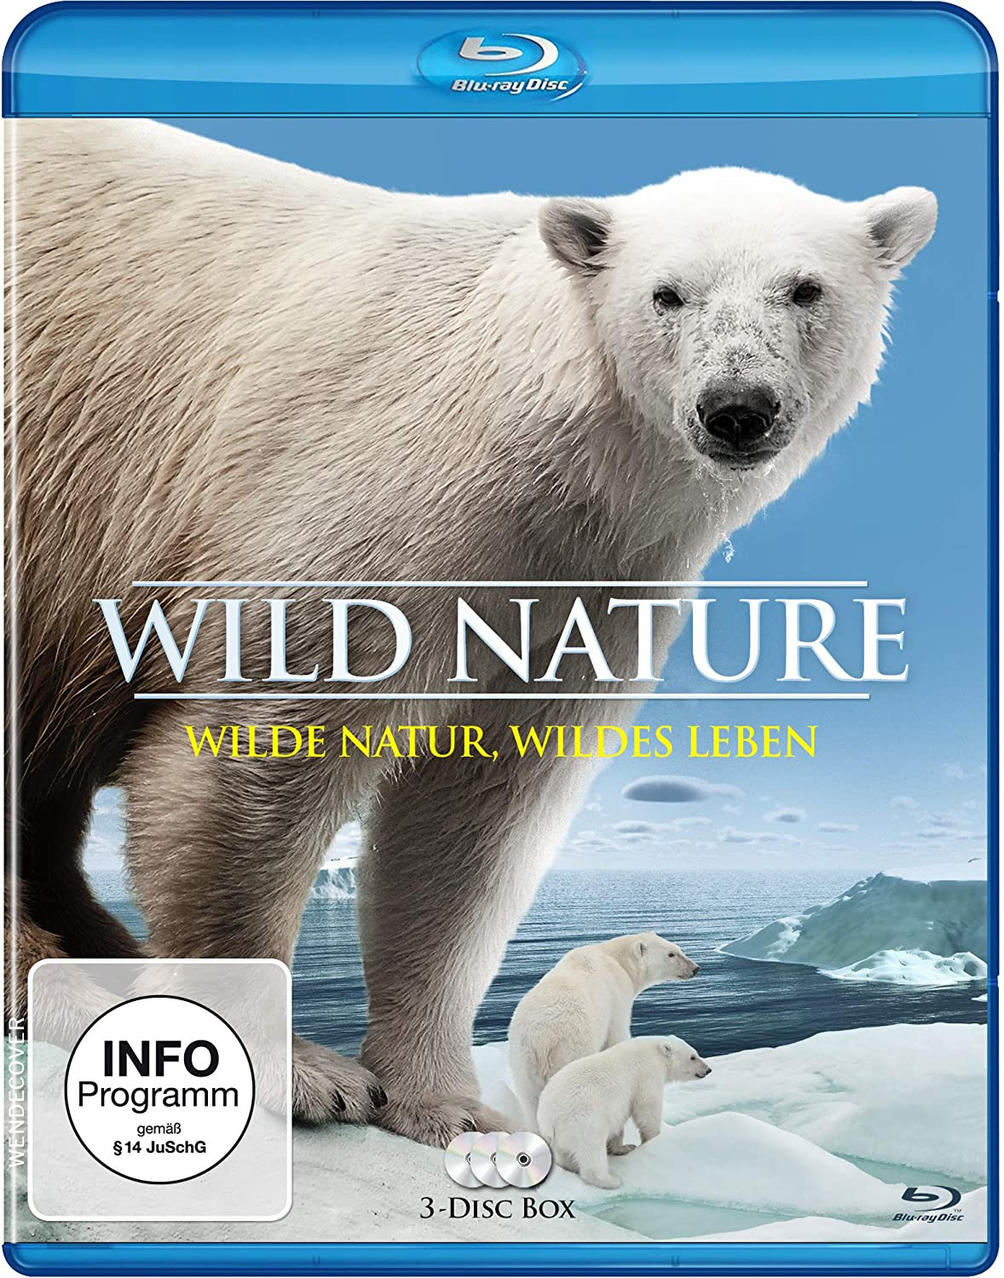 Leben Nature-Wilde Blu-ray Natur,wildes Wild